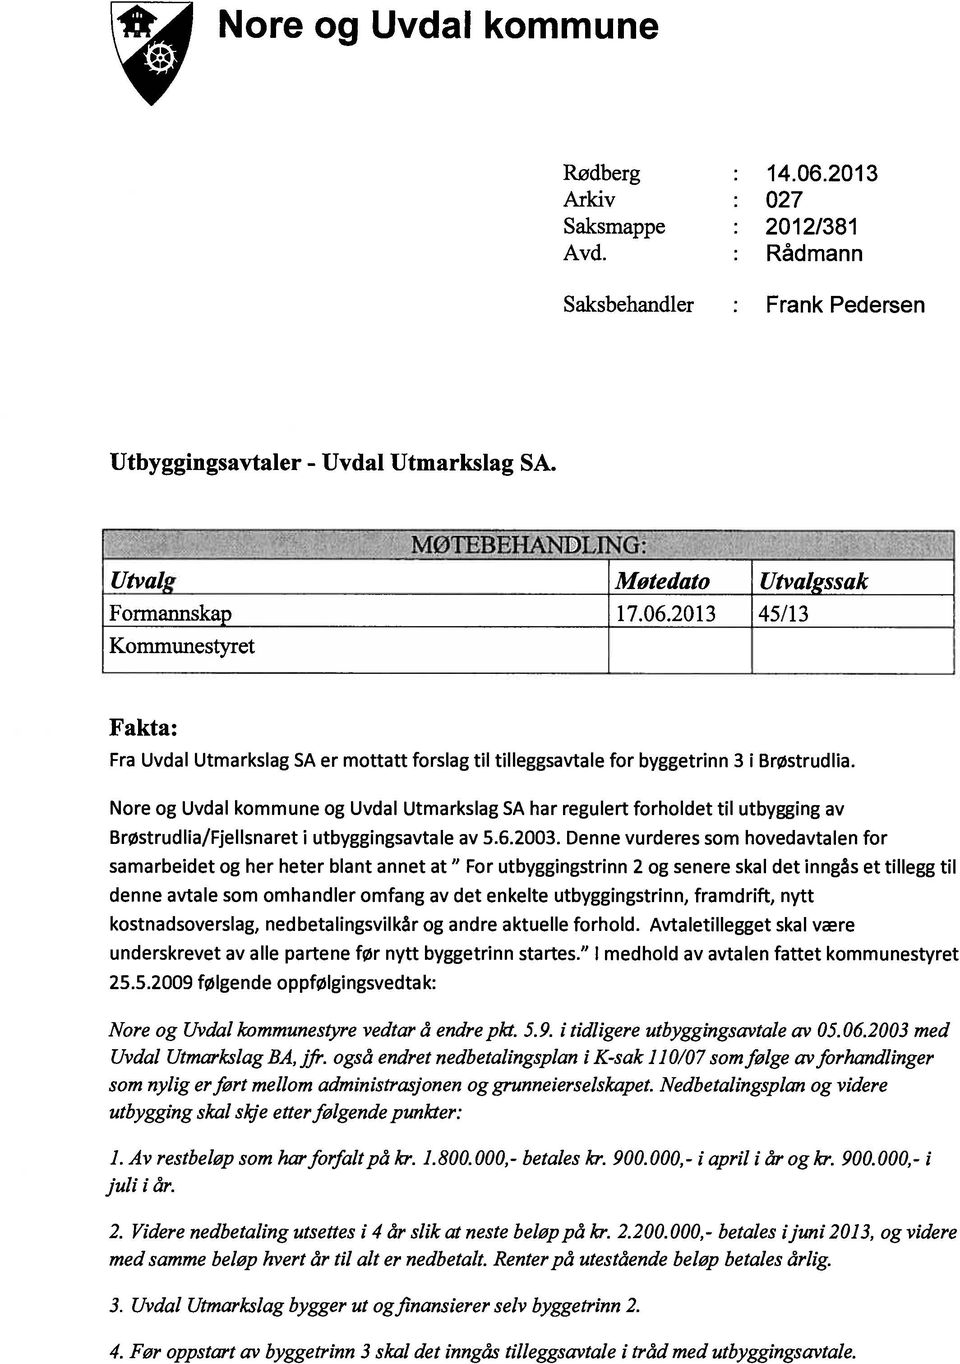 Nore og Uvdal kommune og Uvdal Utmarkslag SA har regulert forholdet til utbygging av Brøstrudlia/Fjellsnaret i utbyggingsavtale av 5.6.2003.